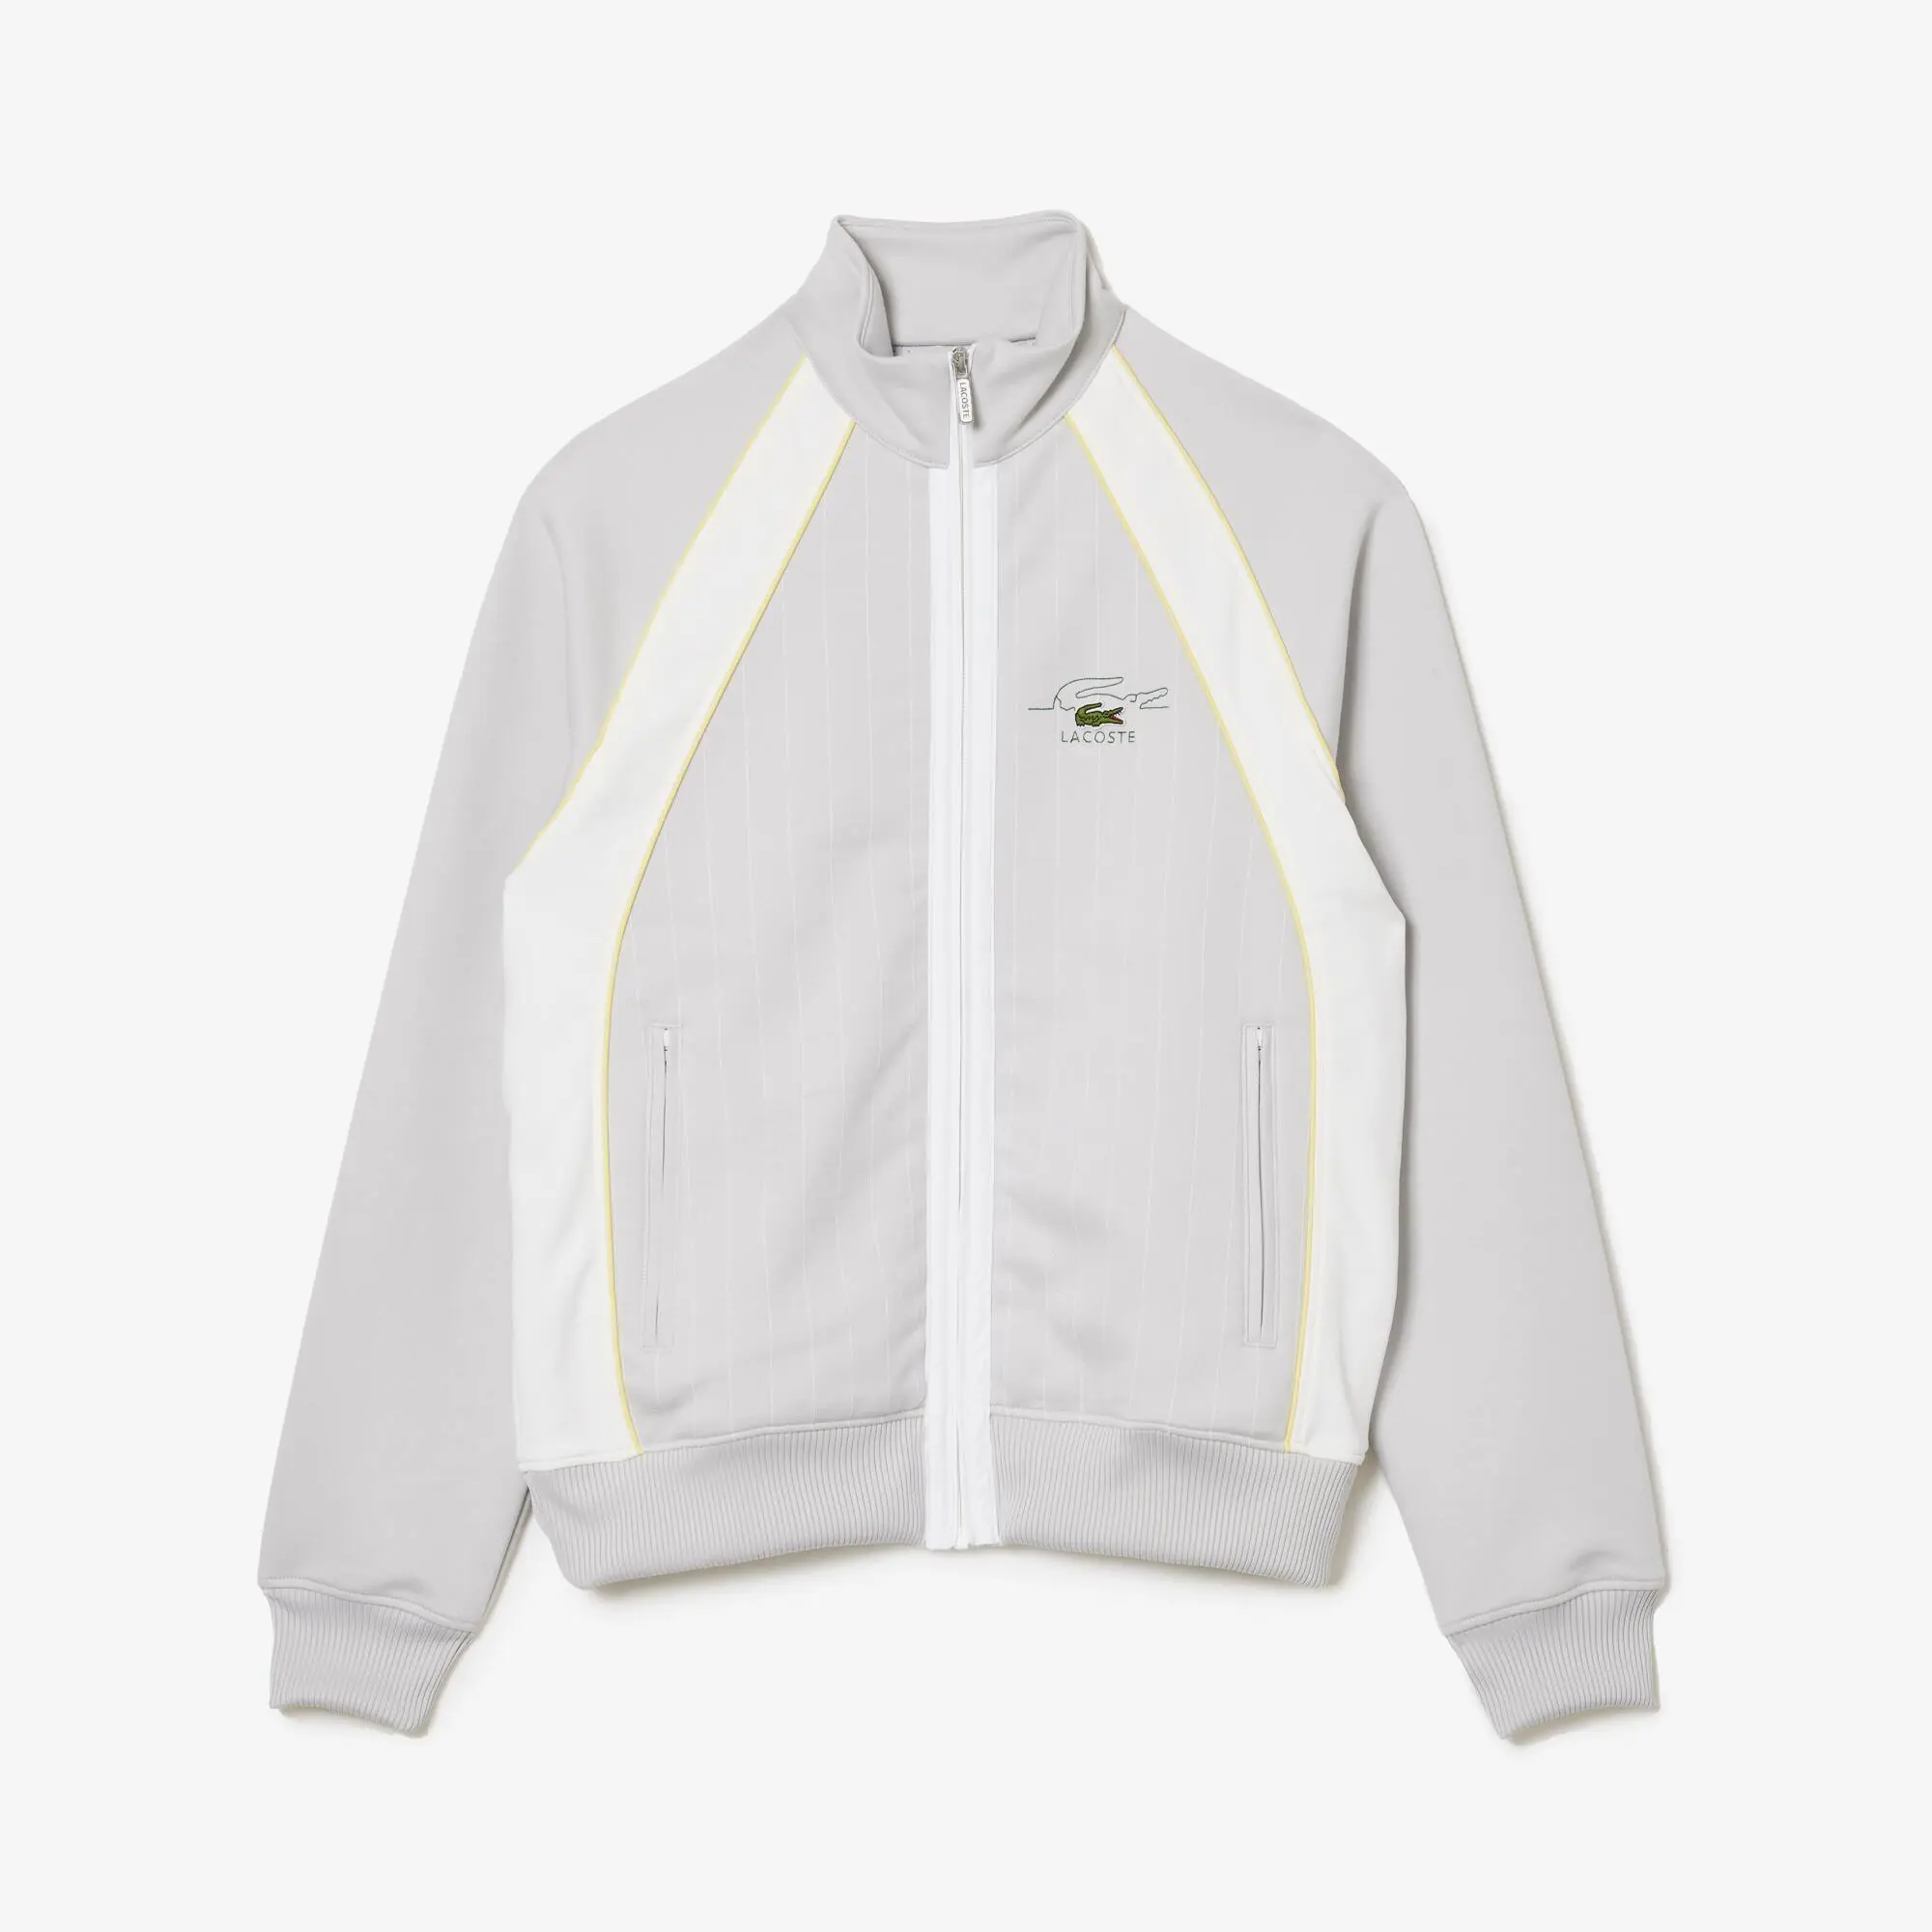 Lacoste Men’s Organic Cotton Colorblock Zip-Up Sweatshirt. 2